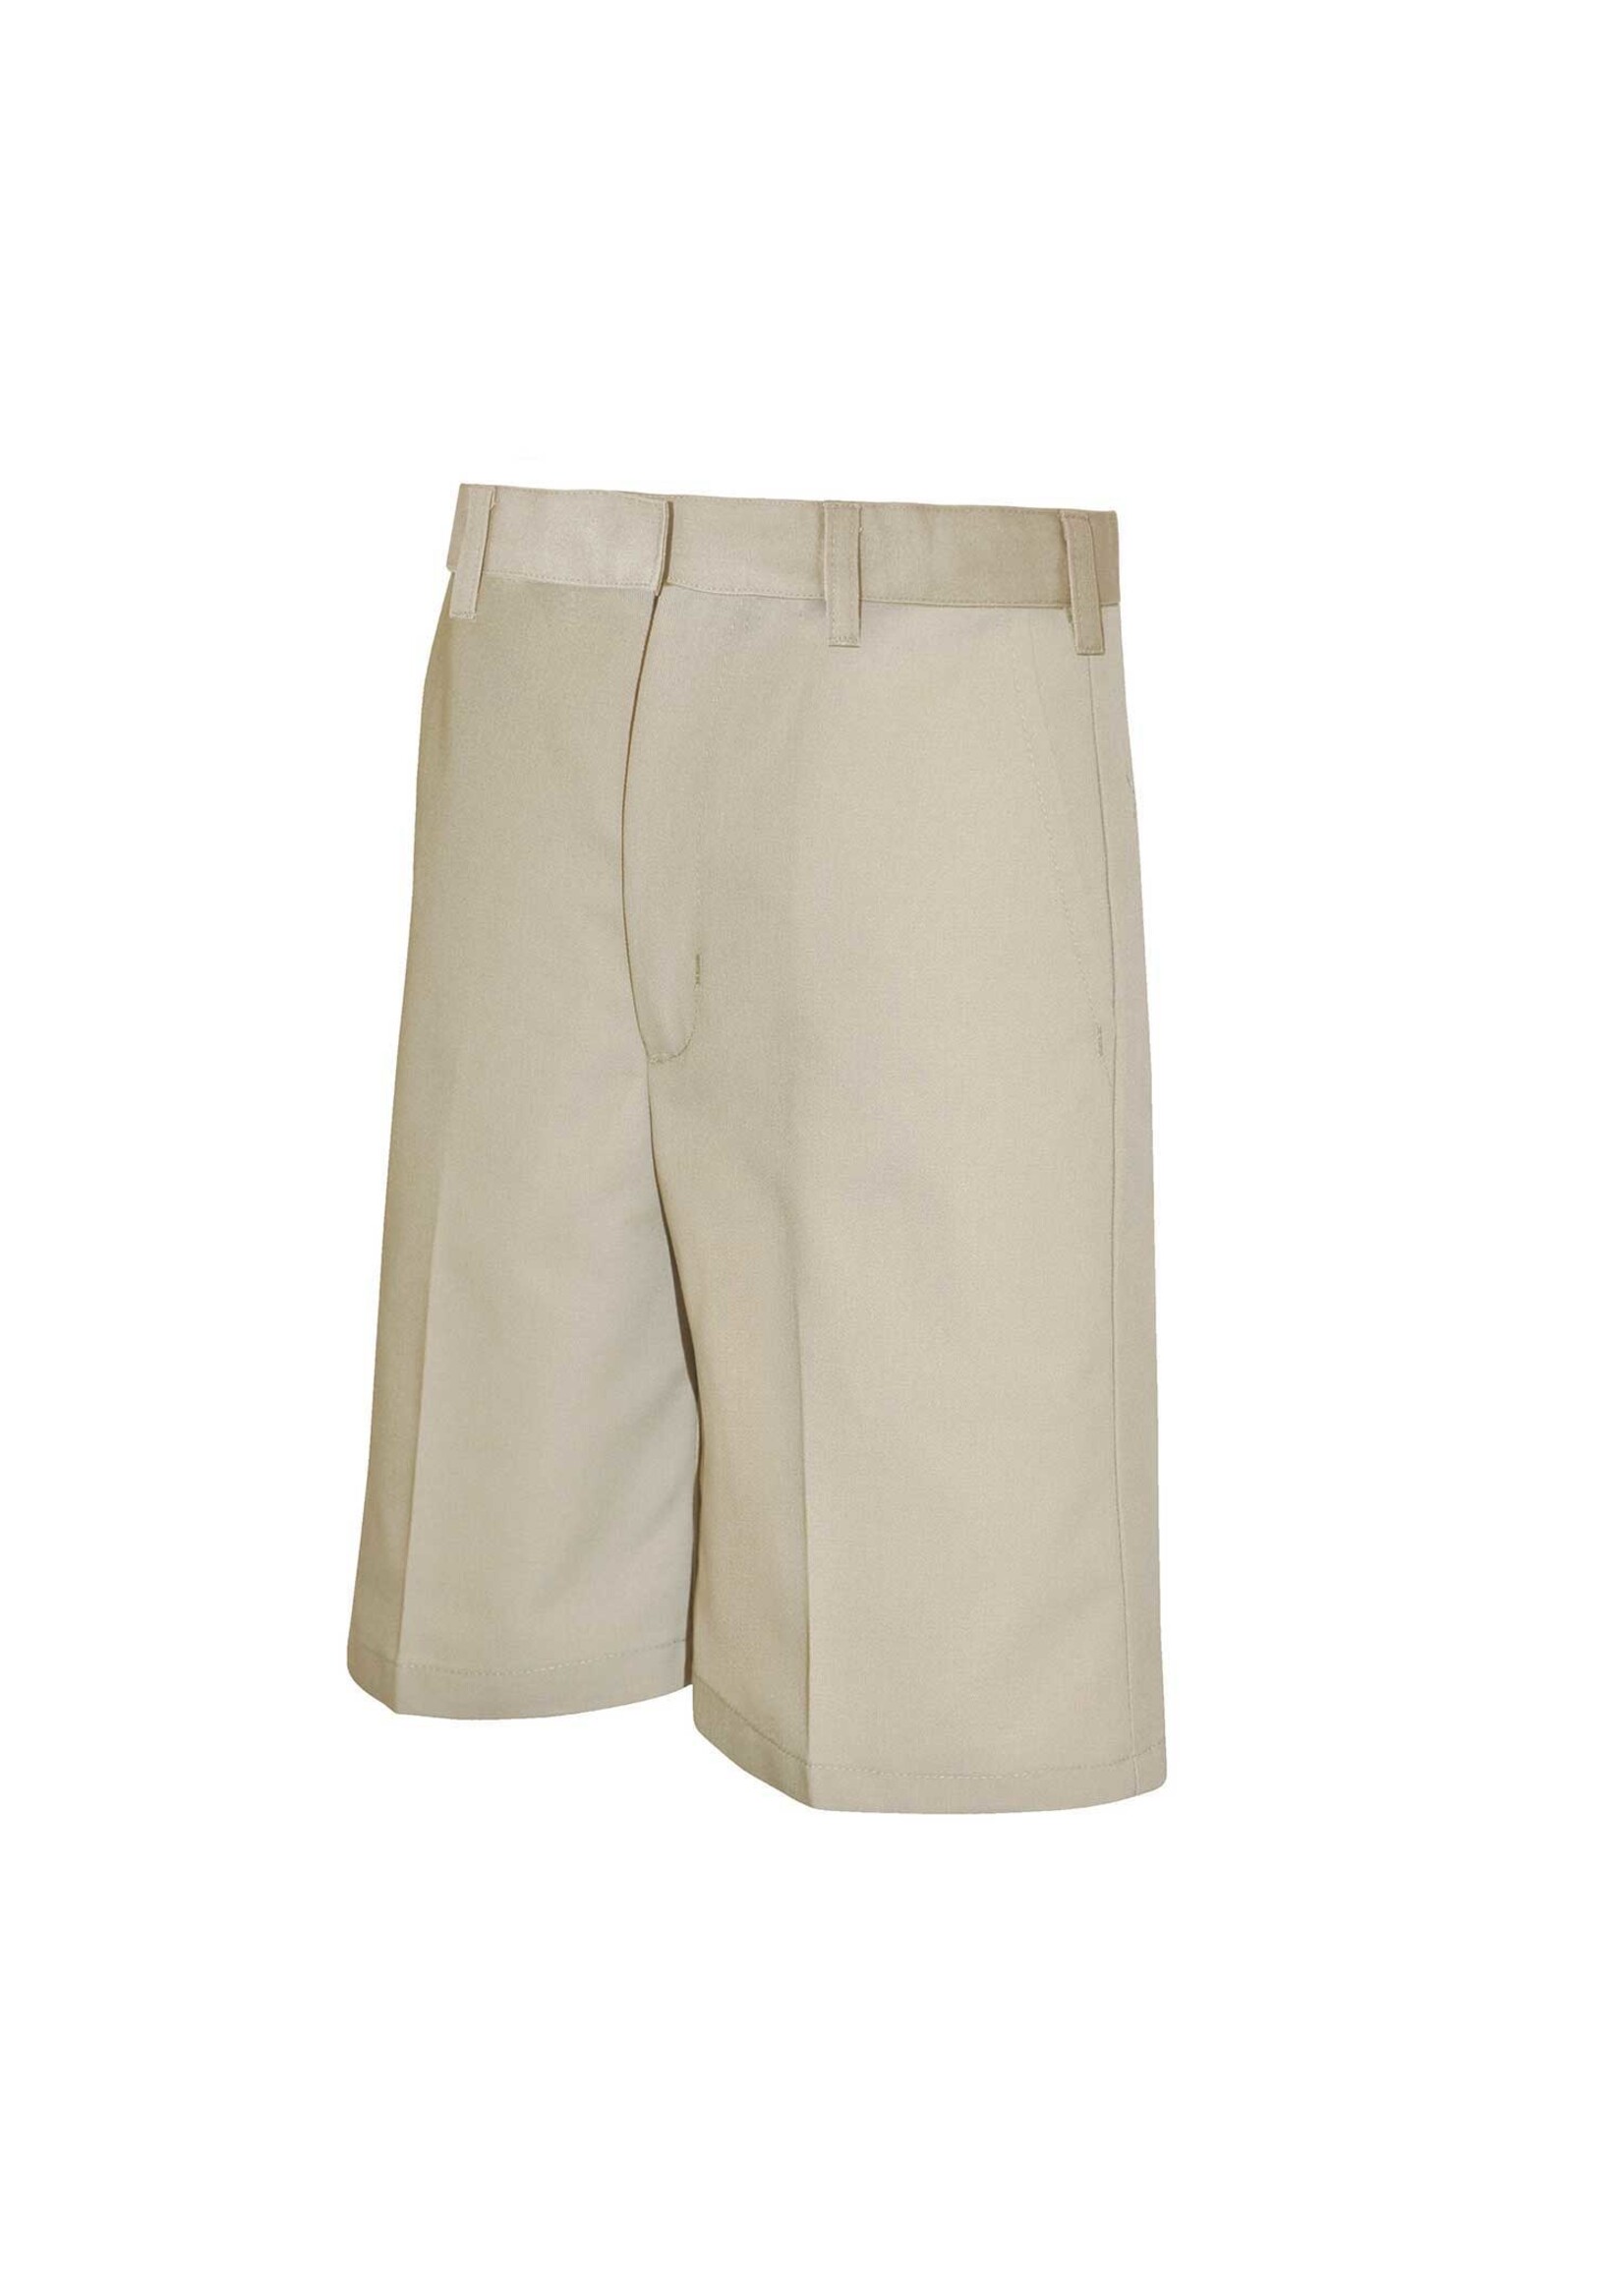 A+ Boys Flat Front Shorts (BK)